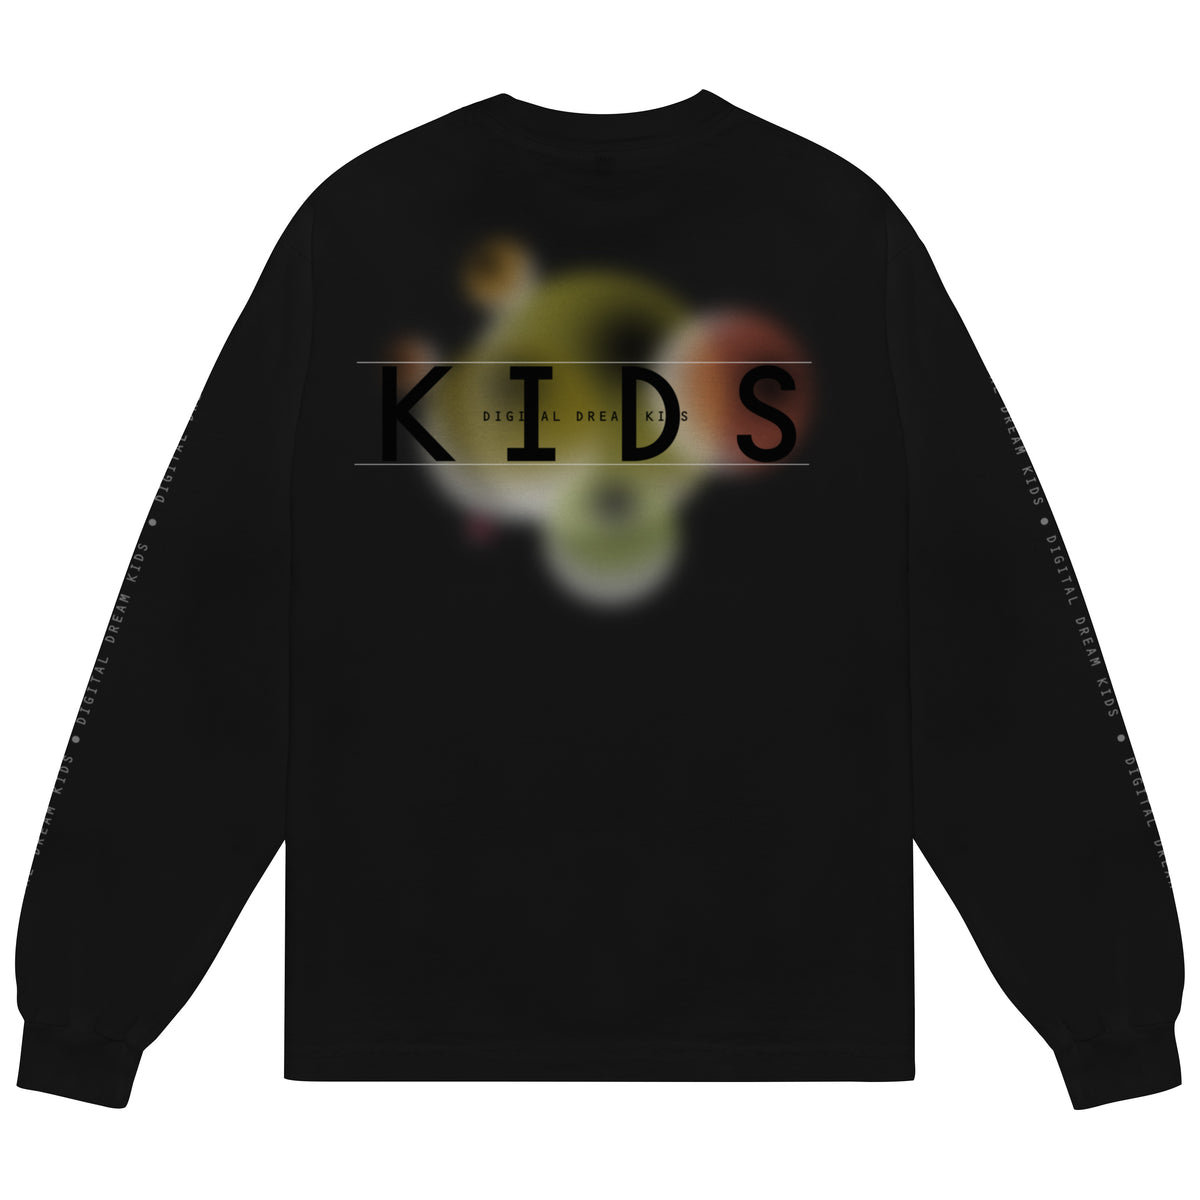 Digital Dream Kids LS Shirt (Black)